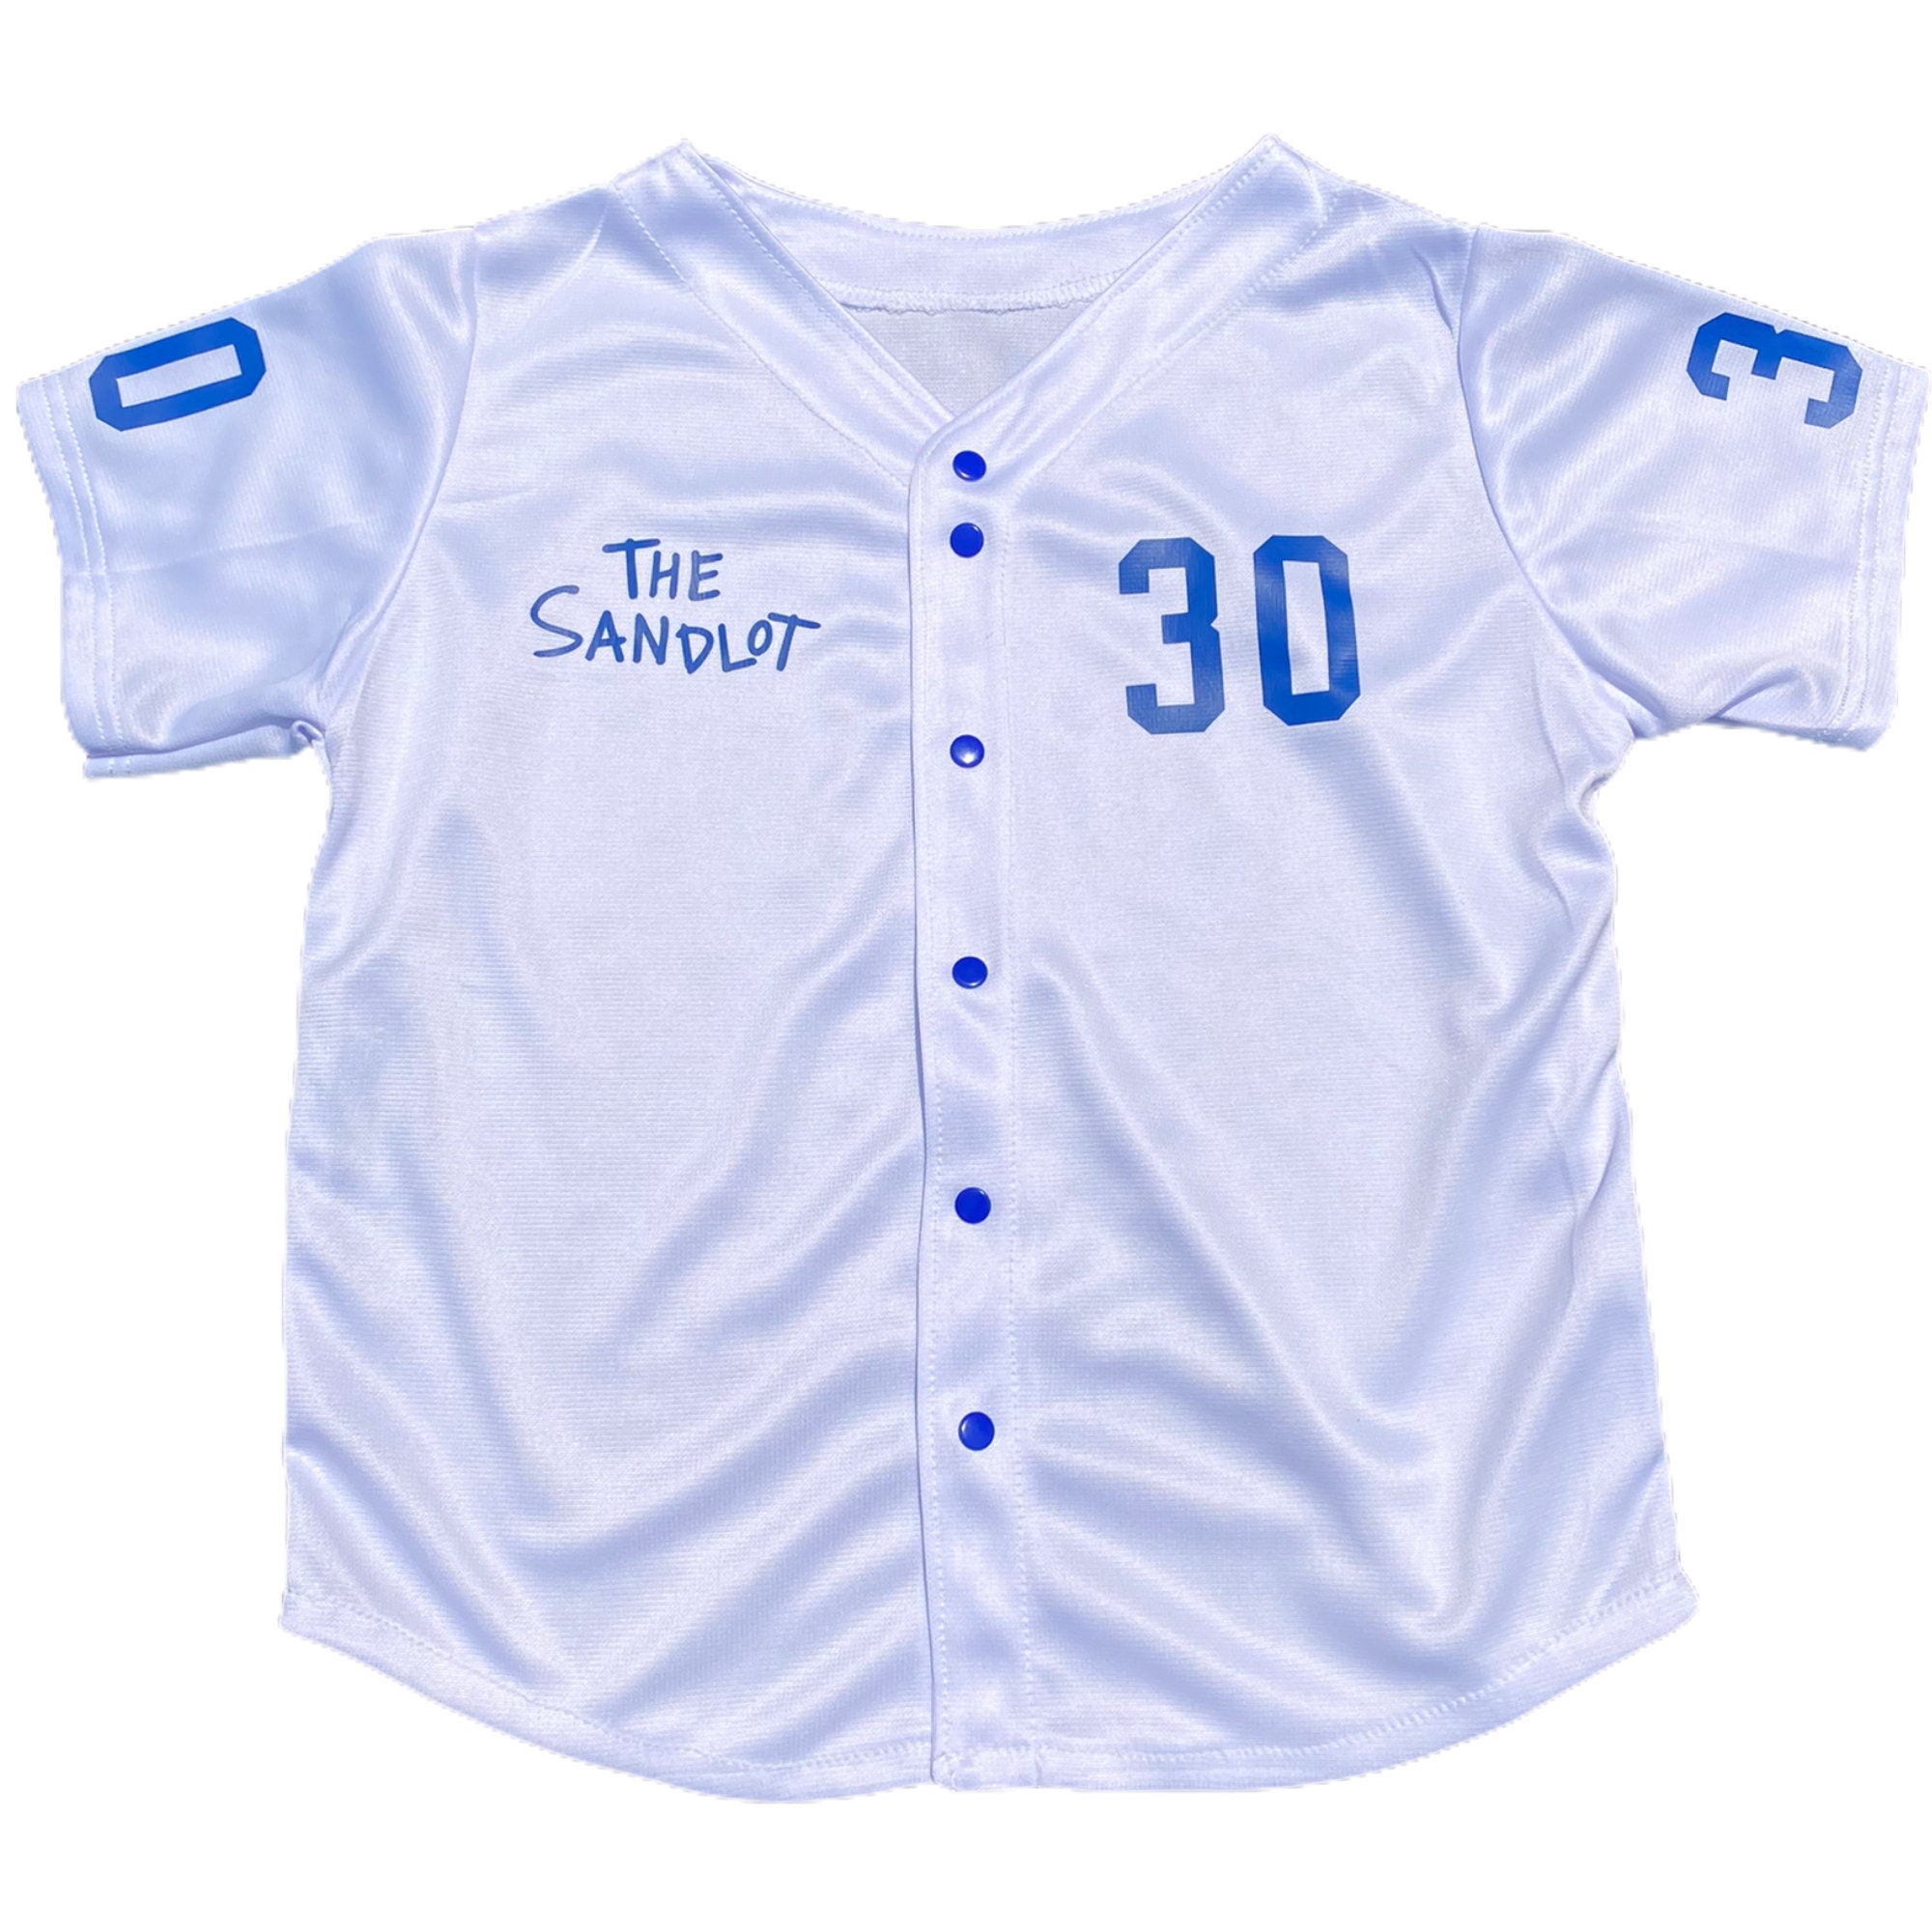 Baseball Jersey for Kids Looks Like Sandlot Jersey - Kids Birthday Jersey, Baby Baseball Jersey, Halloween Costume